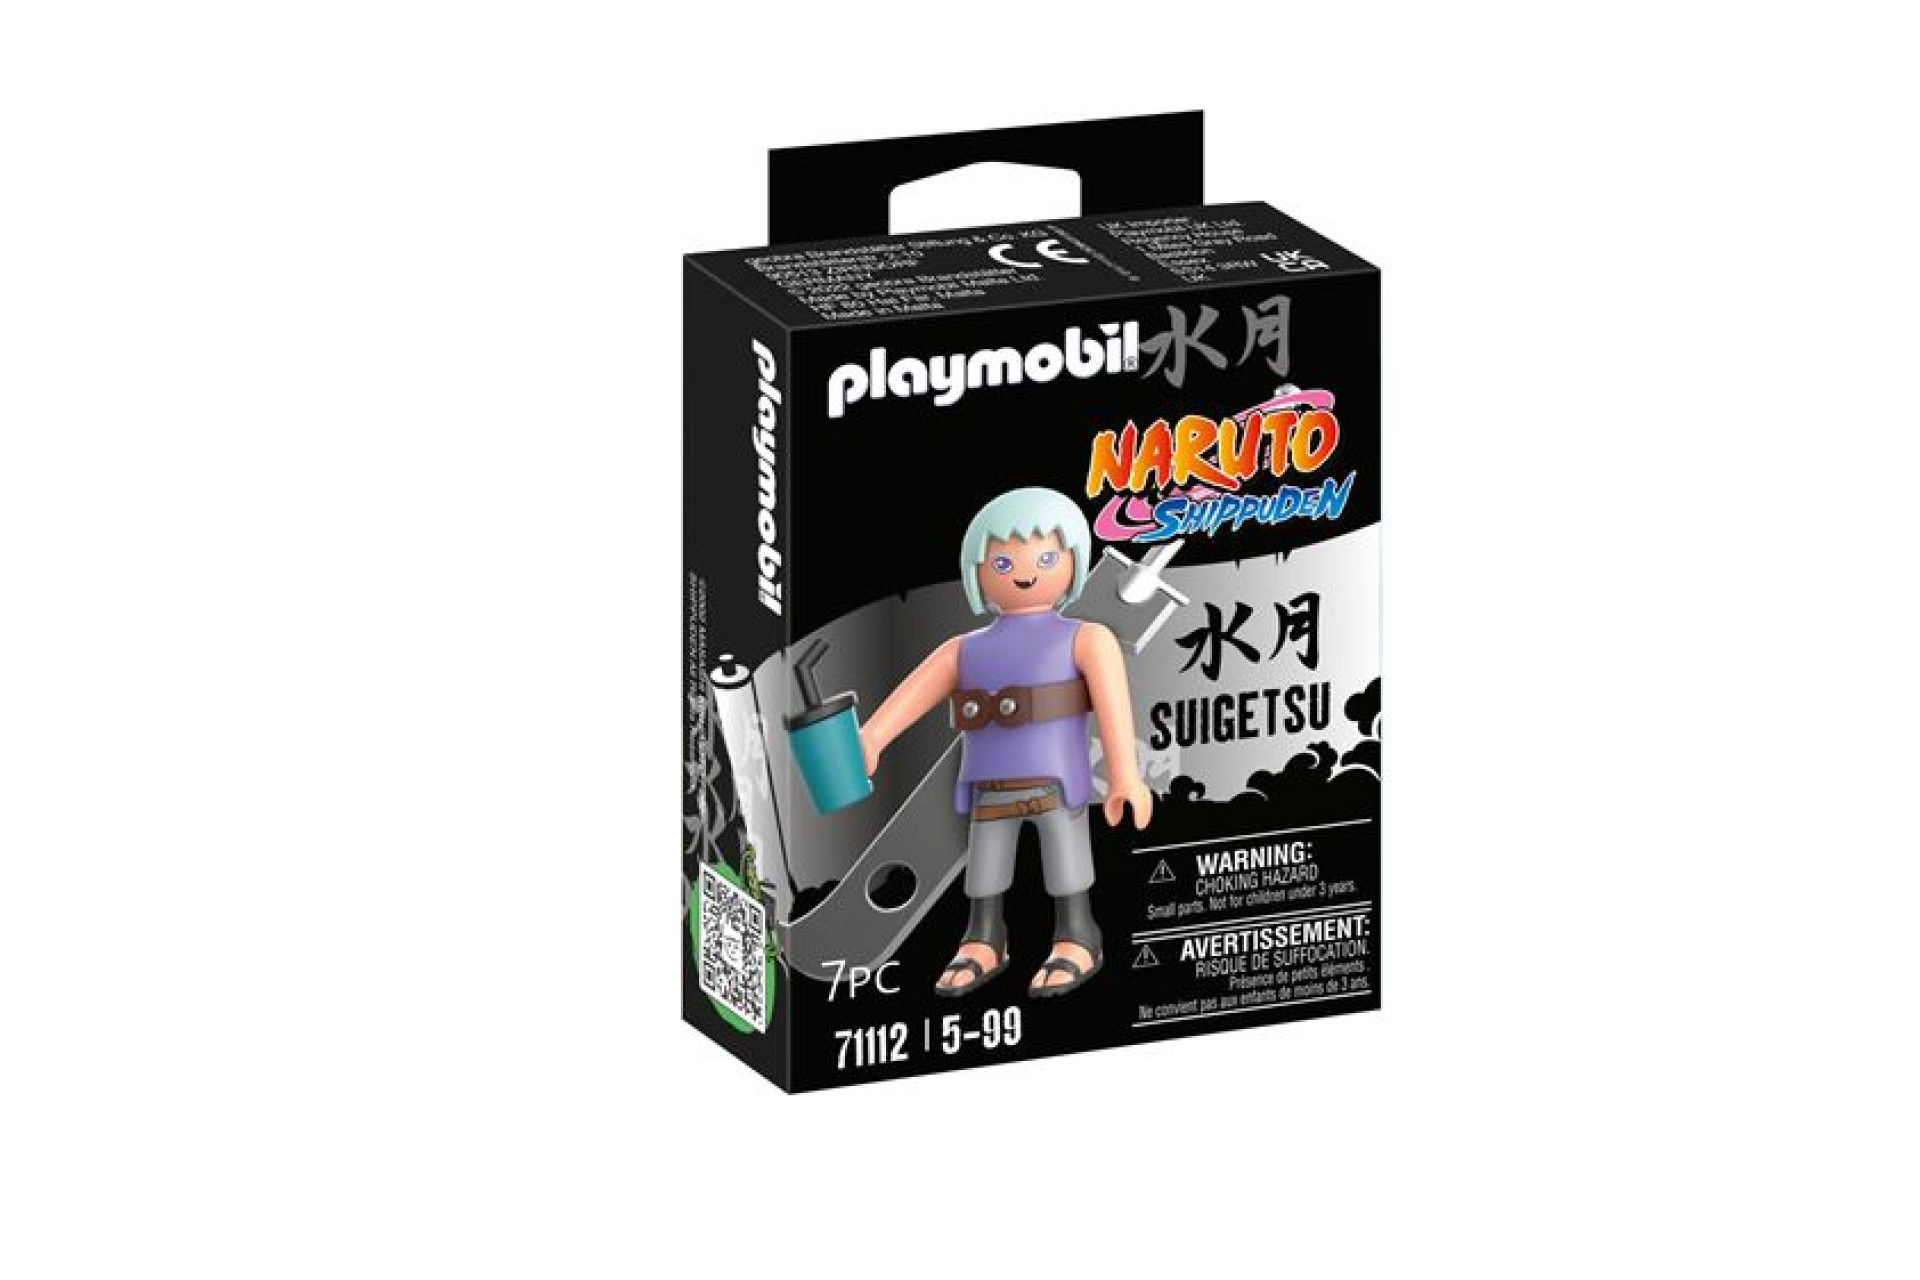 Acheter Playmobil Naruto 71112 Suigetsu